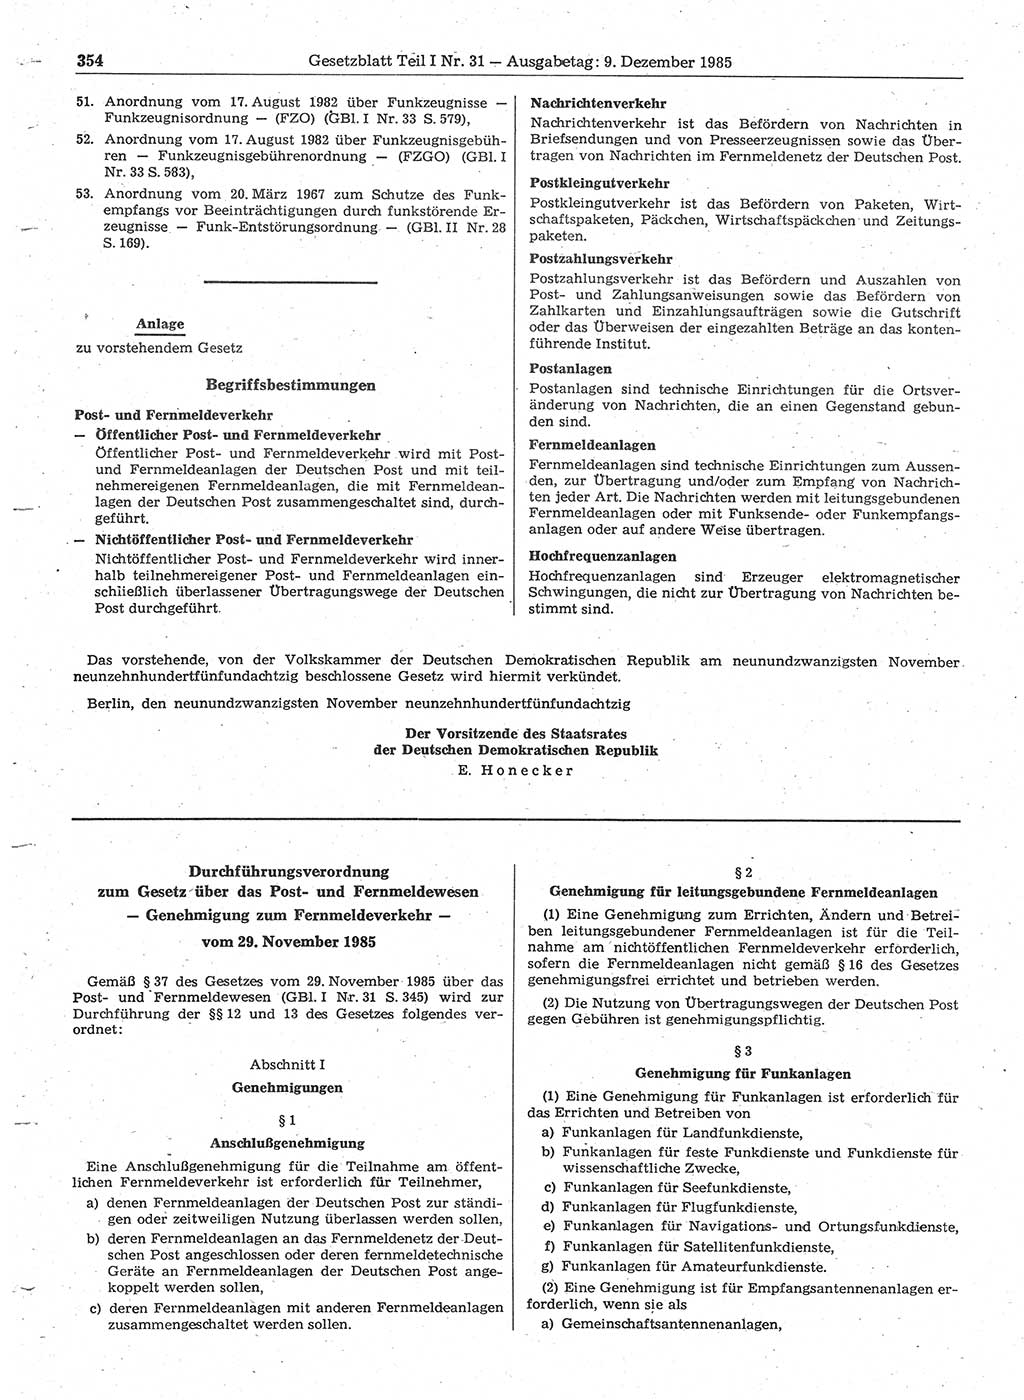 Gesetzblatt (GBl.) der Deutschen Demokratischen Republik (DDR) Teil Ⅰ 1985, Seite 354 (GBl. DDR Ⅰ 1985, S. 354)